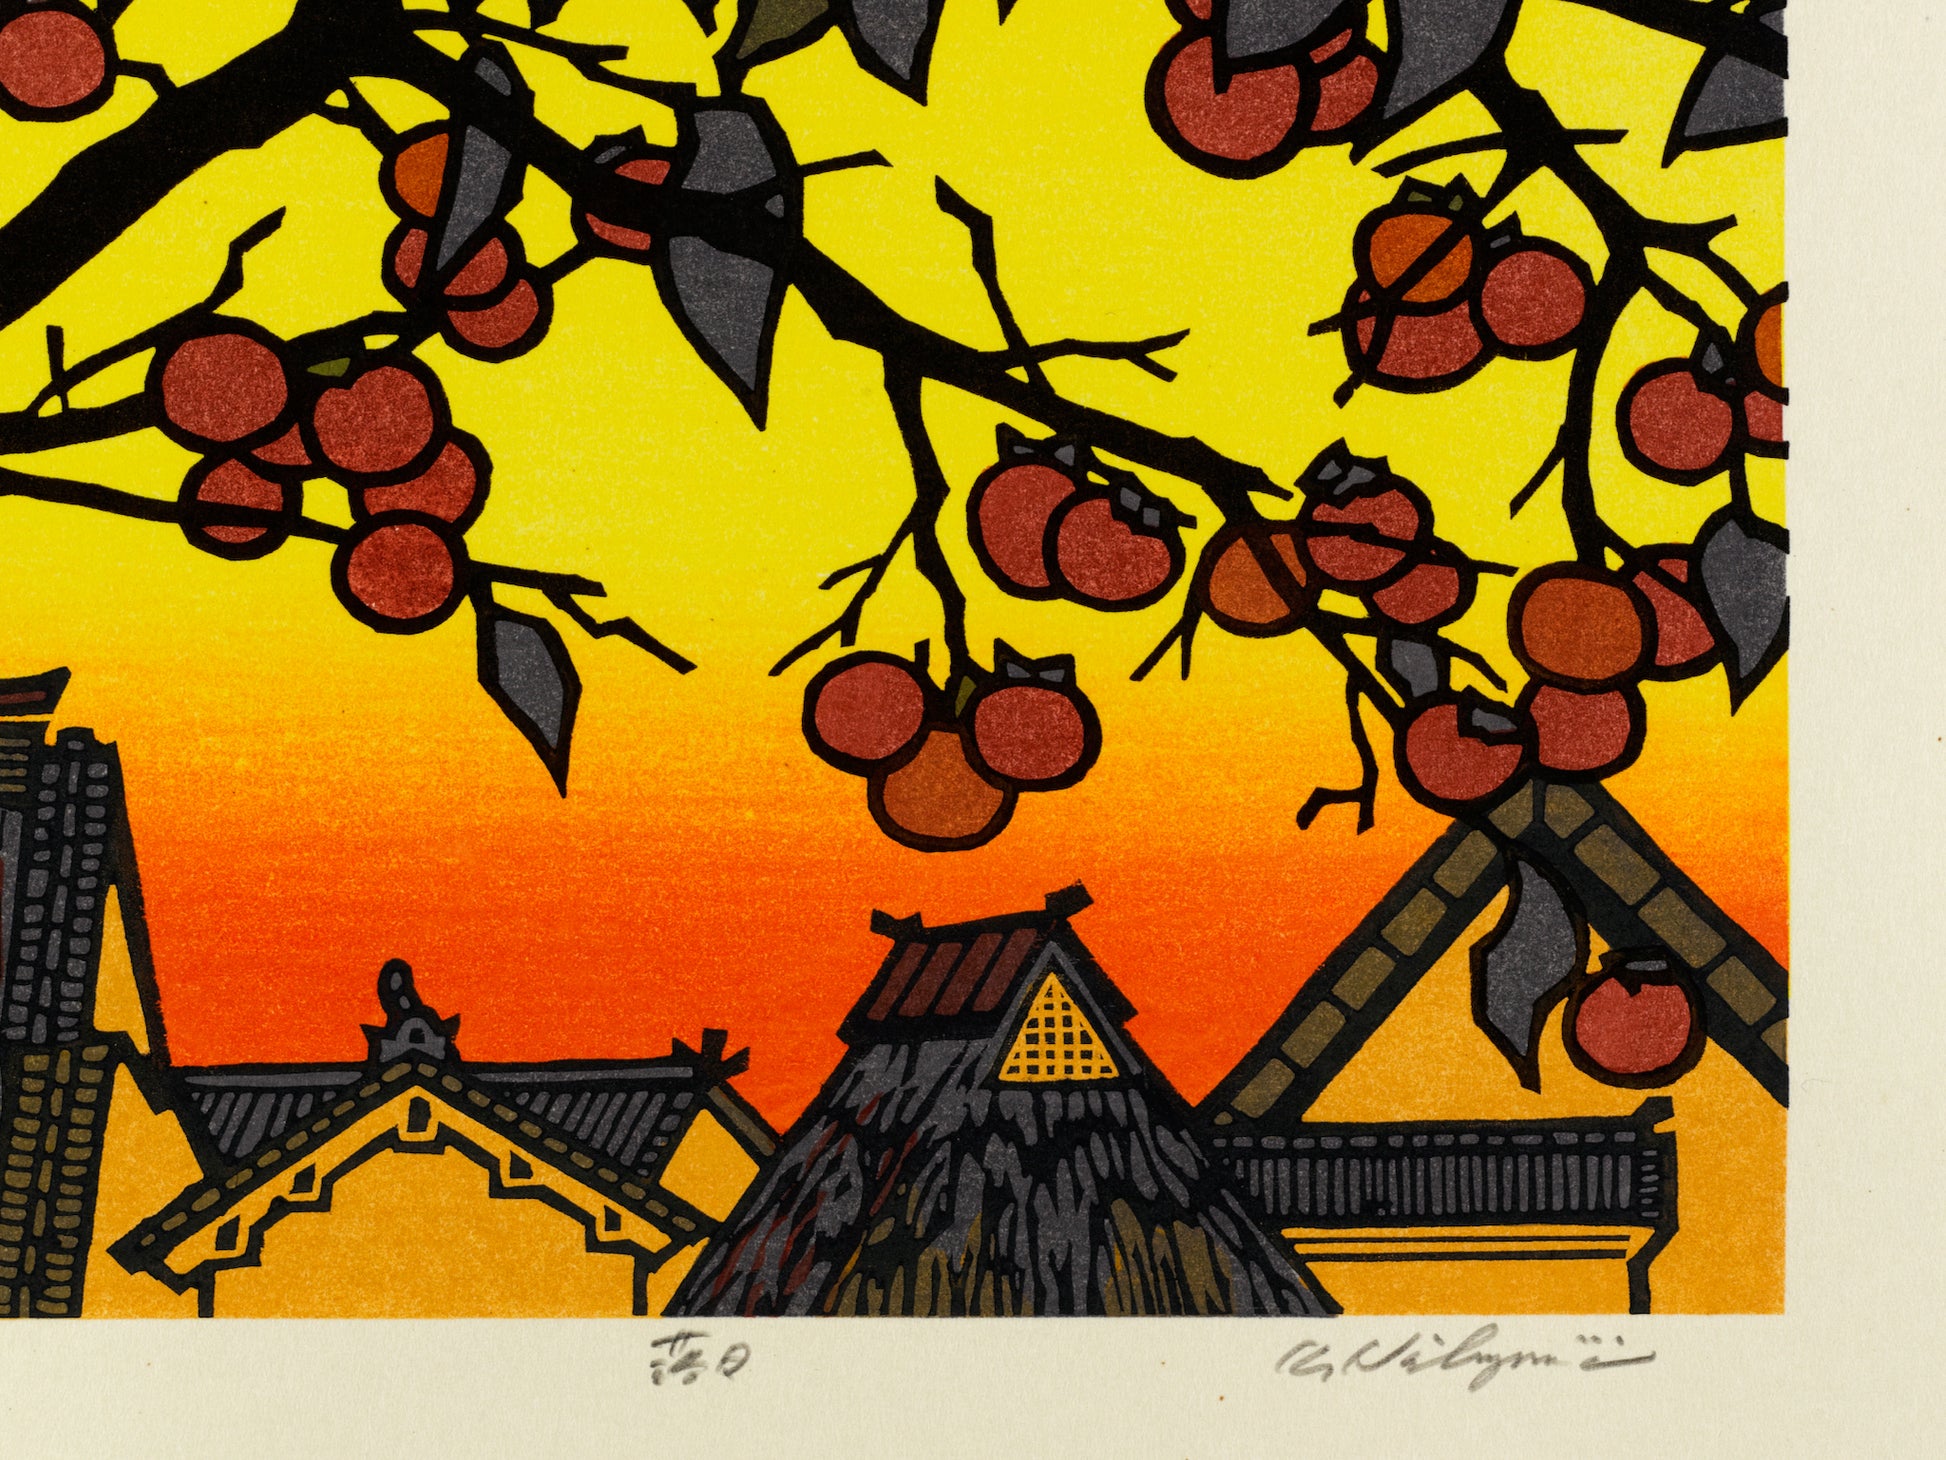 estampe japonaise contemporaine soleil couchant sur toits de chaumes des maisons japonaises et arbre à kaki, la signature de l'artiste Nishijima